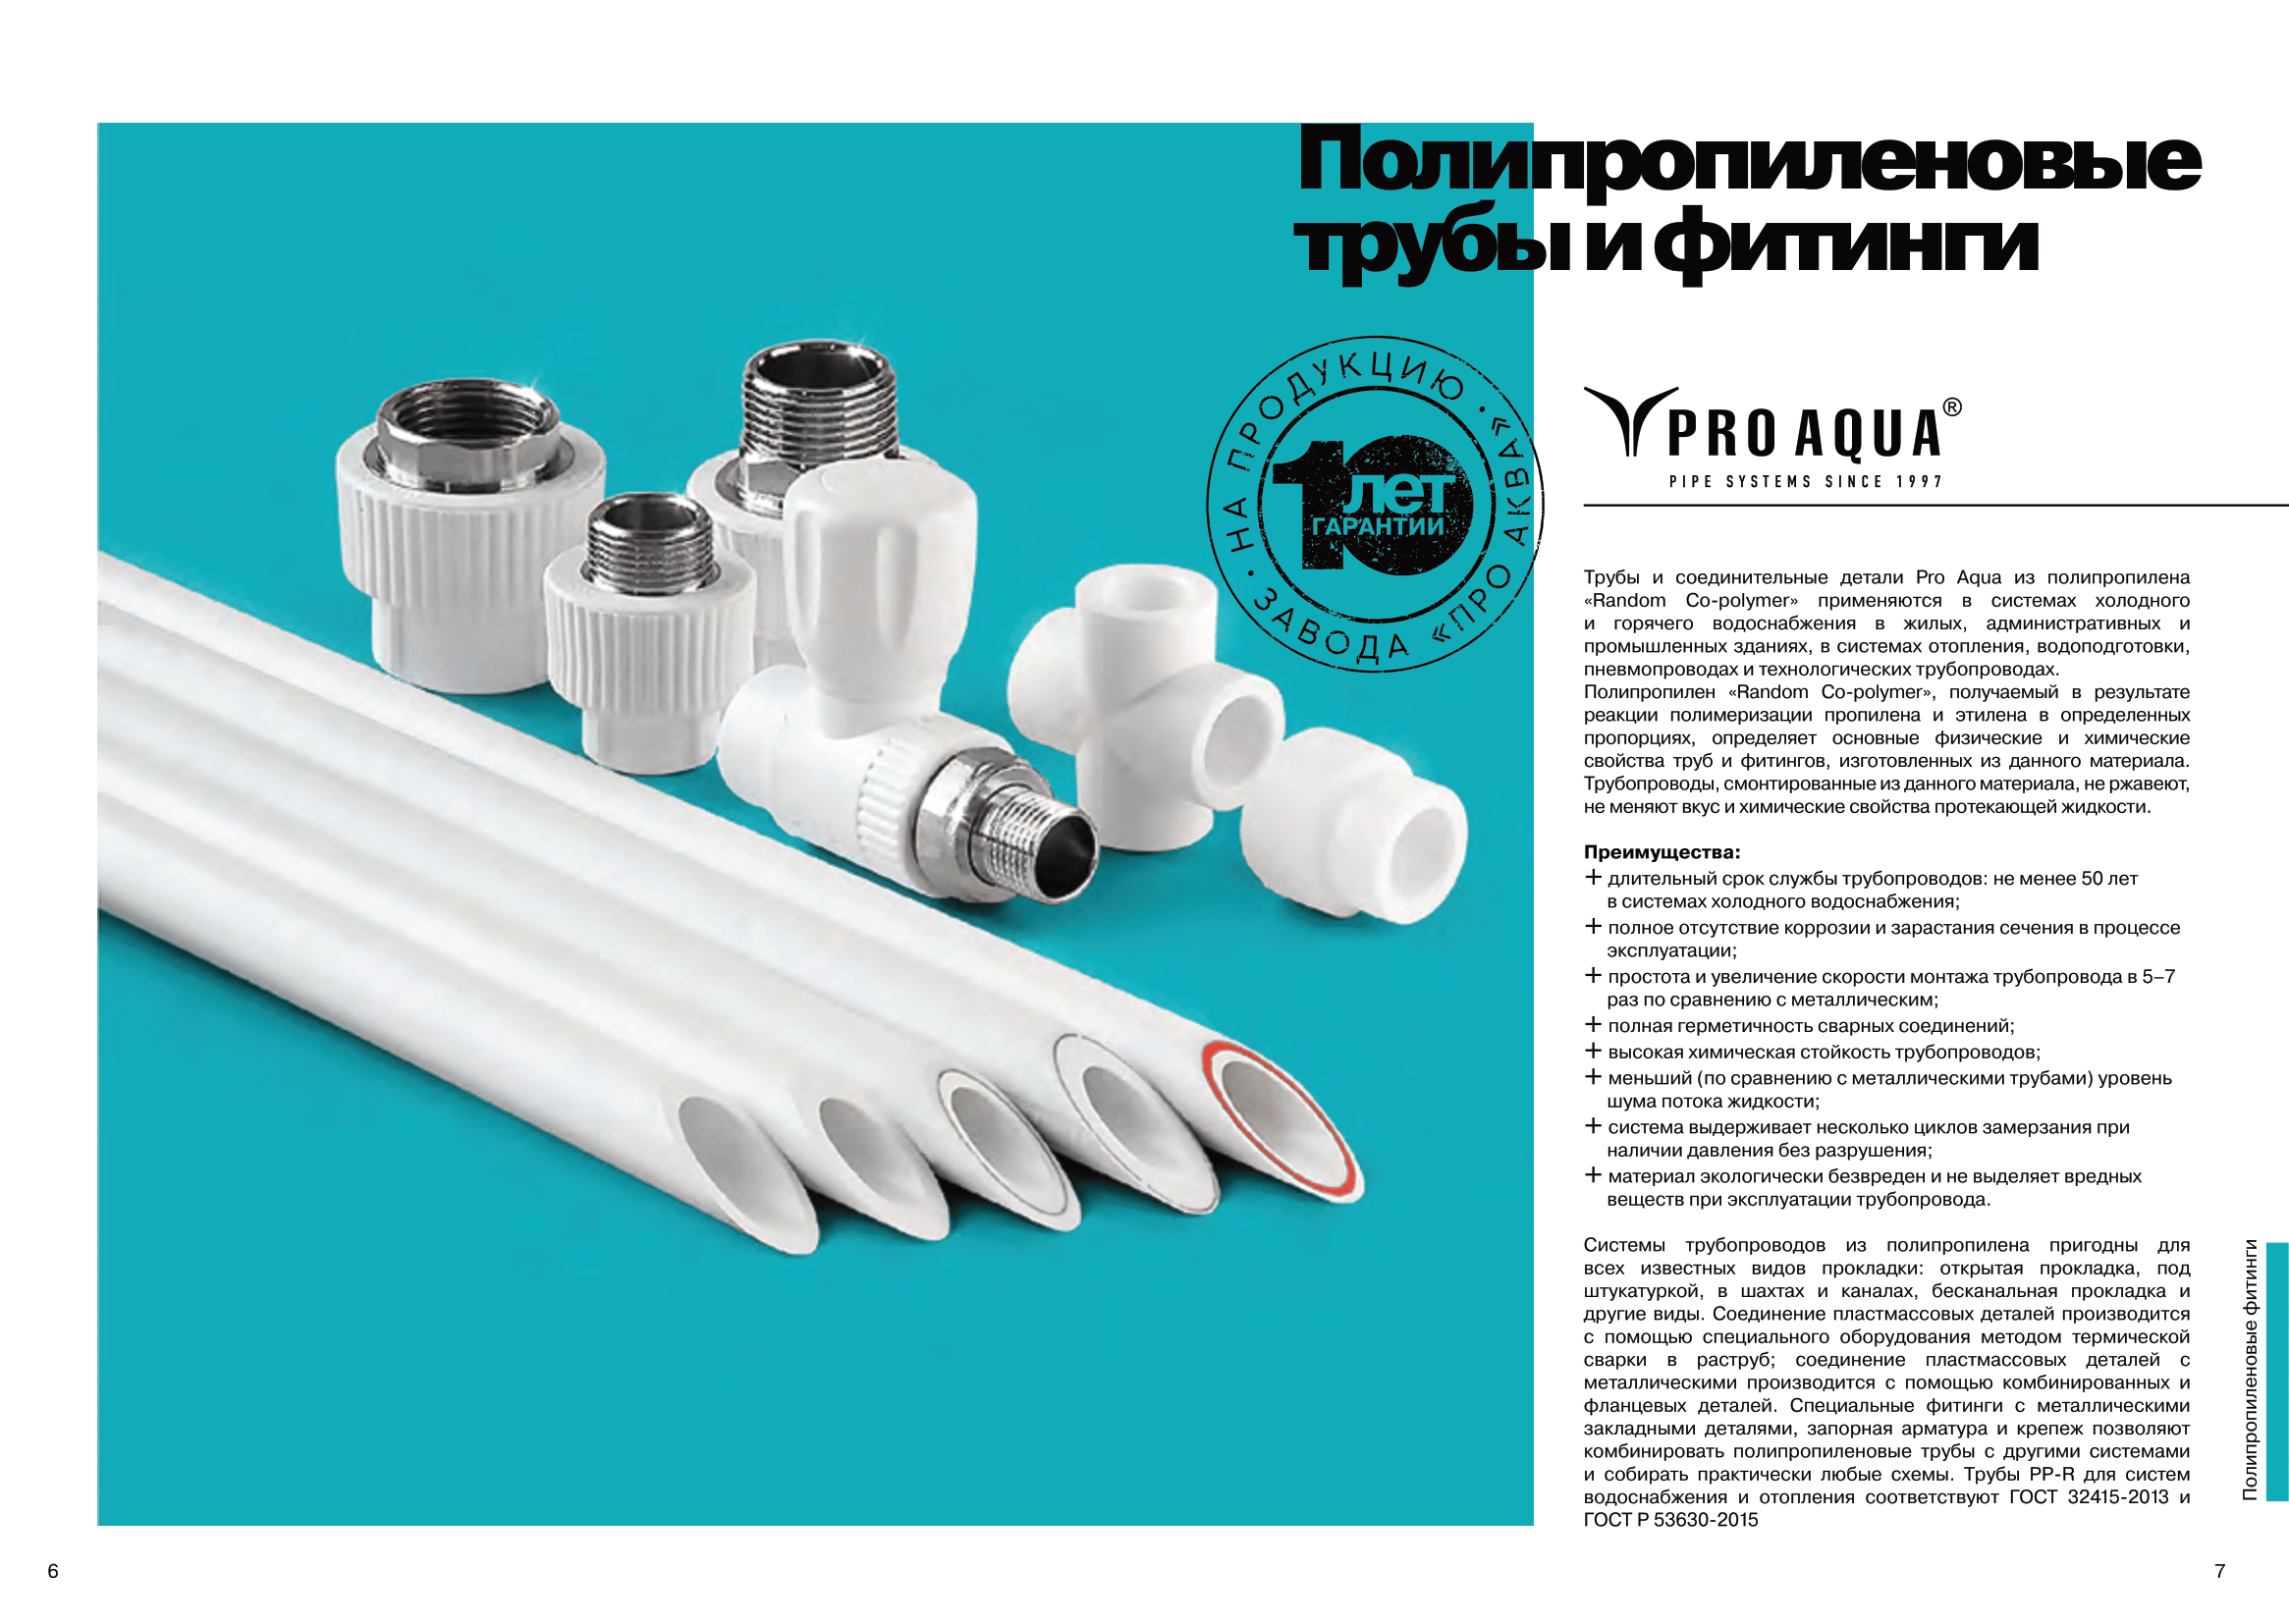 Всё о пластиковых трубах для водоснабжения - vodatyt.ru